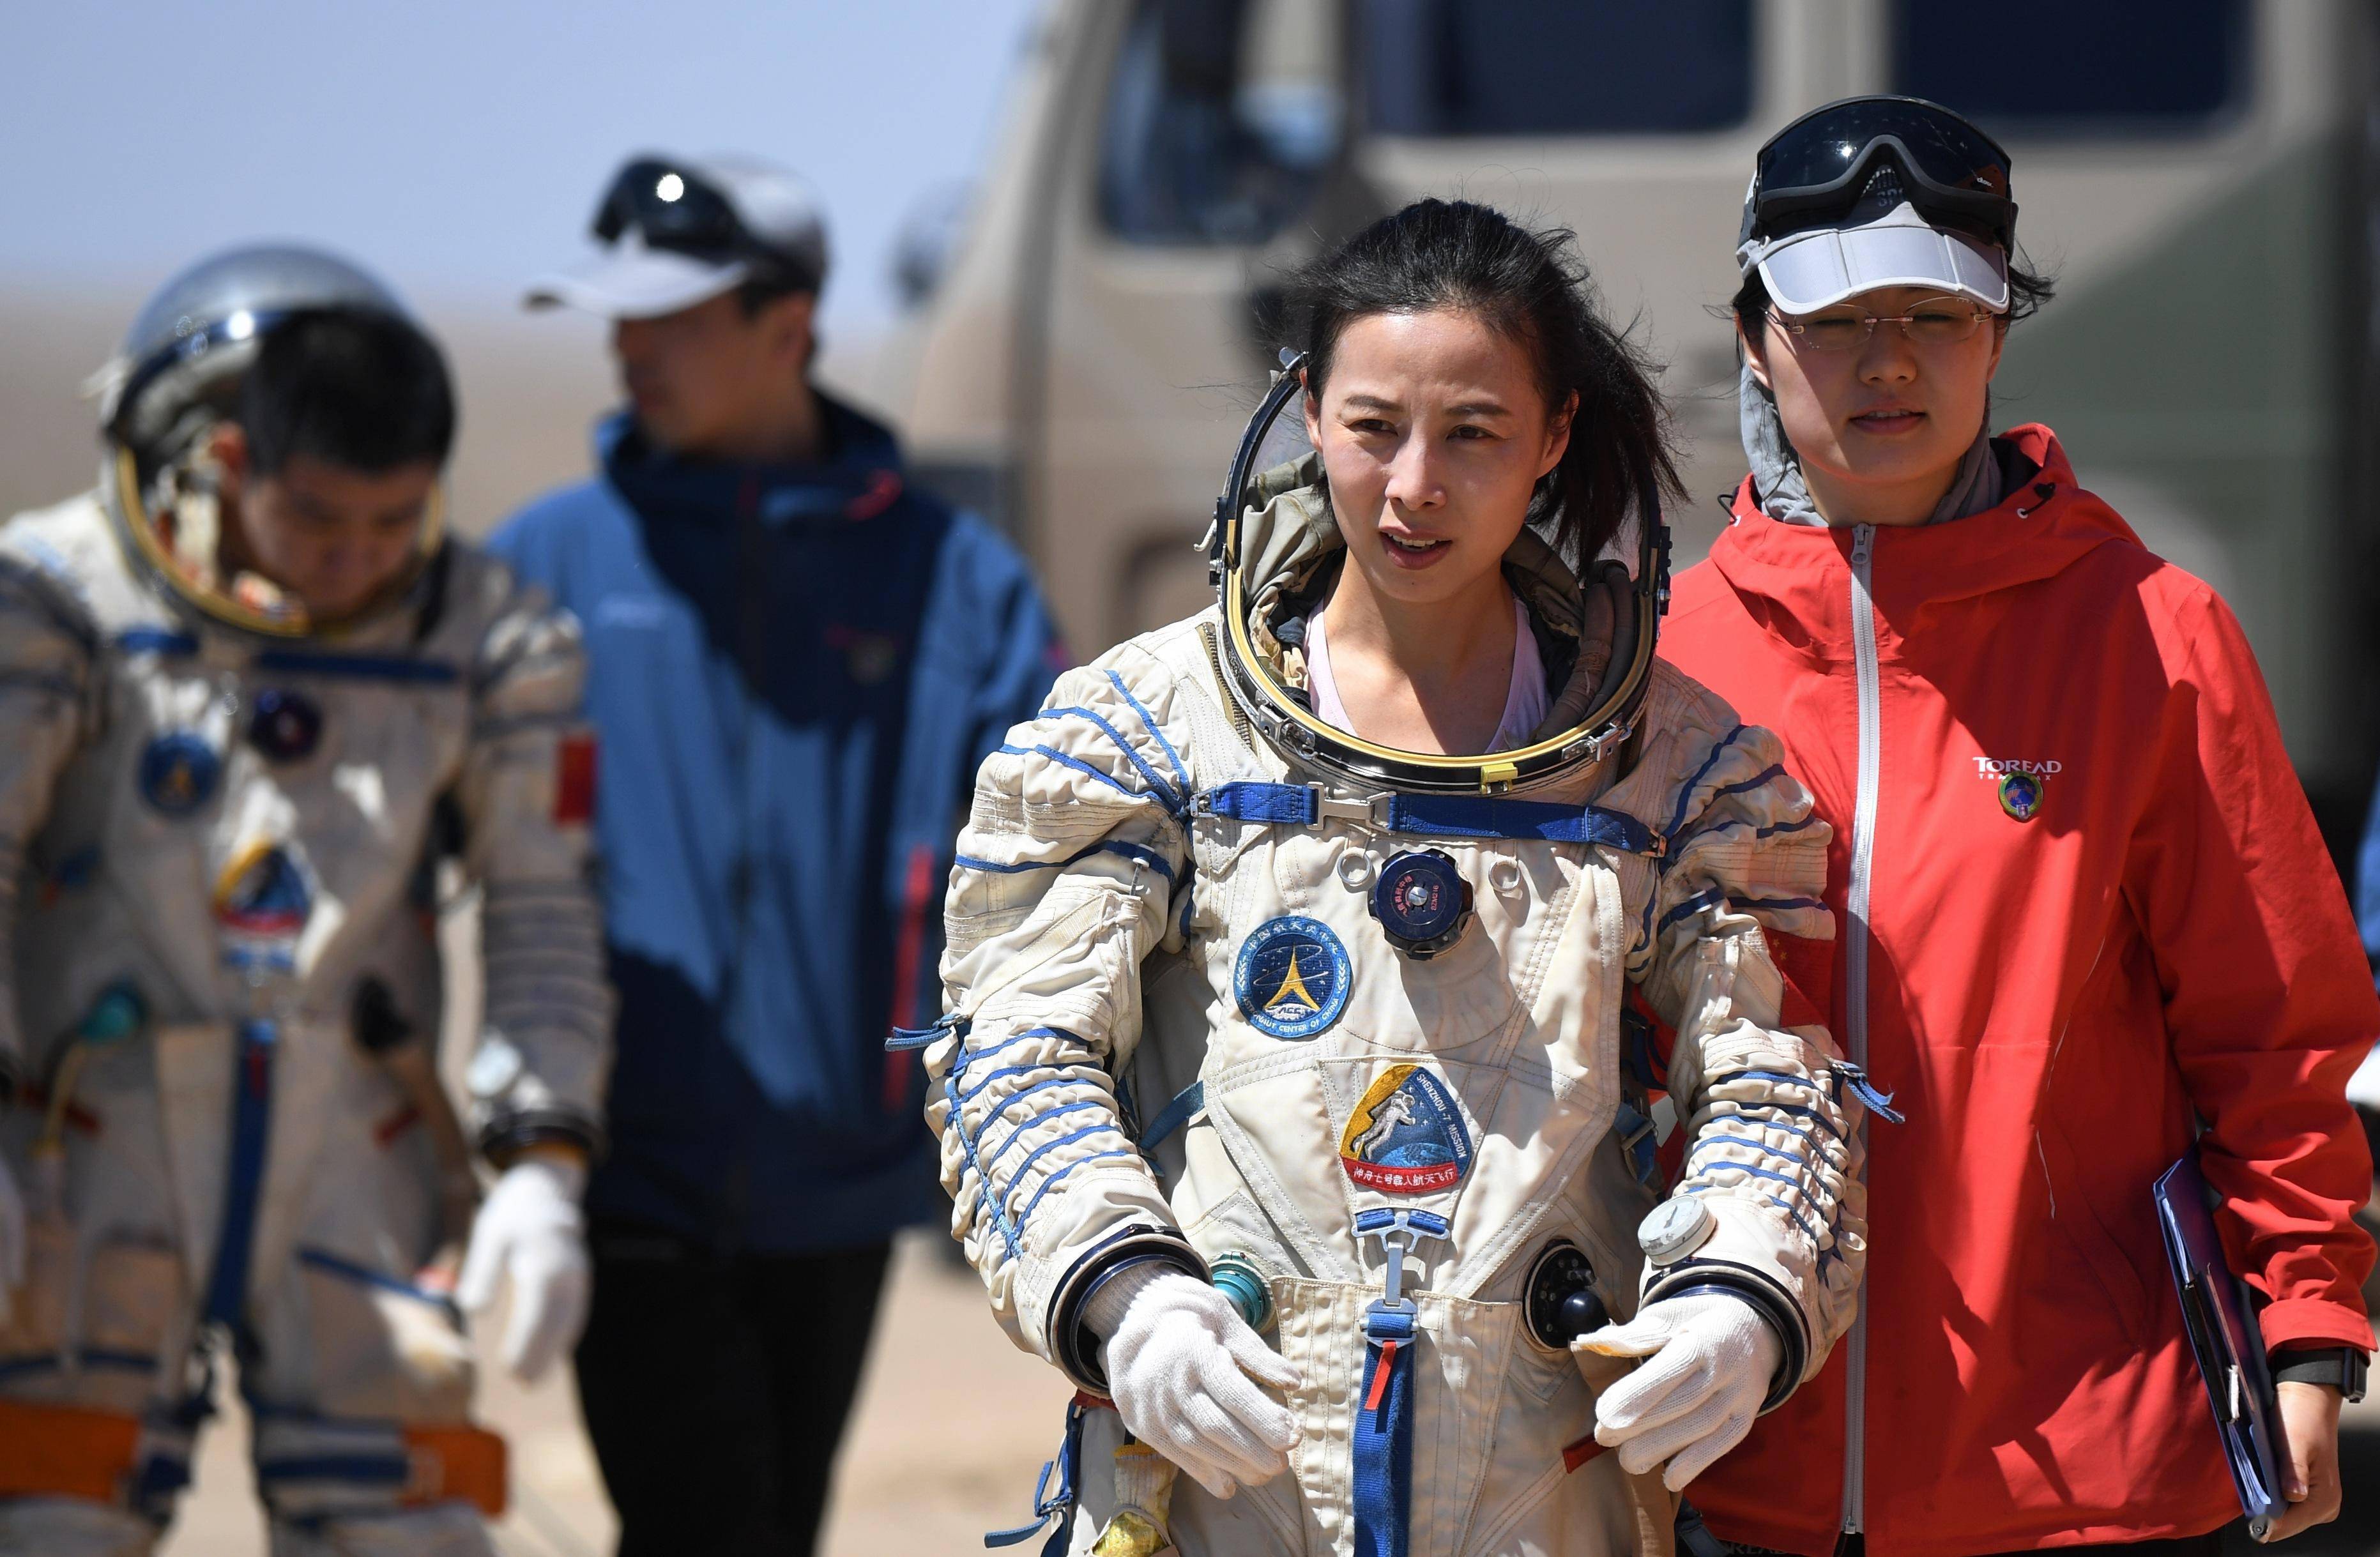 又美又飒!王亚平将成中国首位出舱女航天员,组图看幕后训练